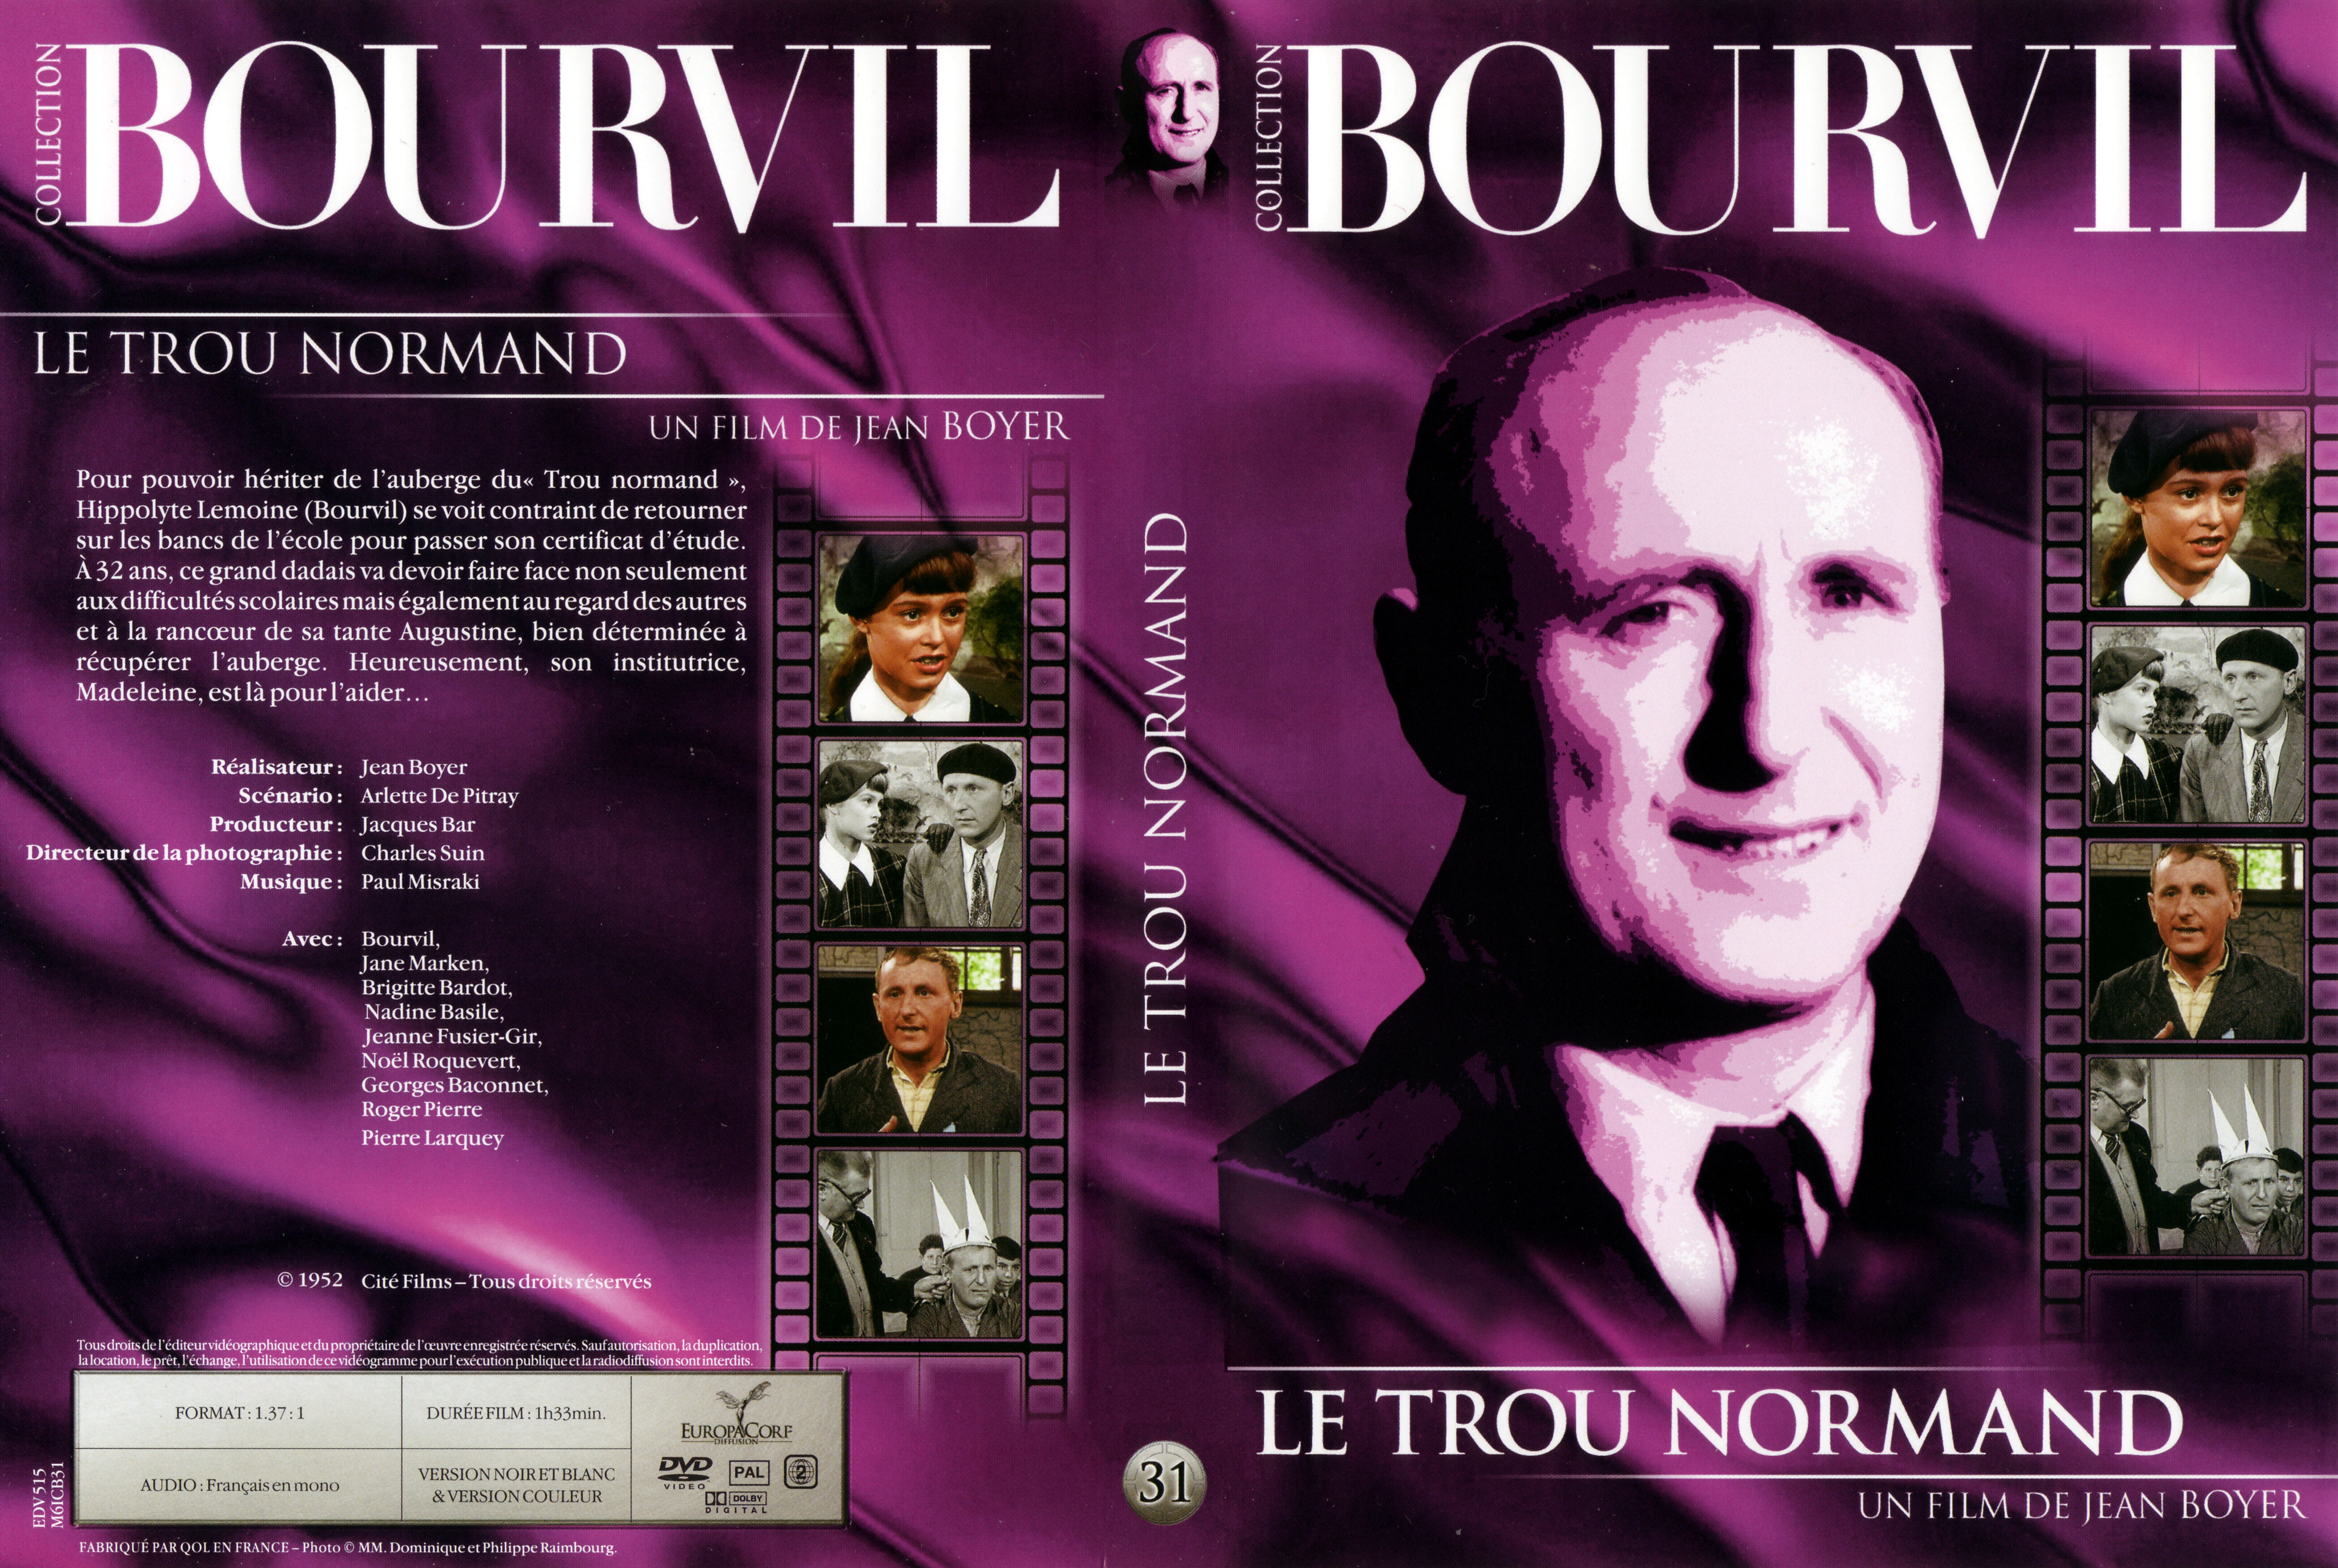 Jaquette DVD Le trou normand v3